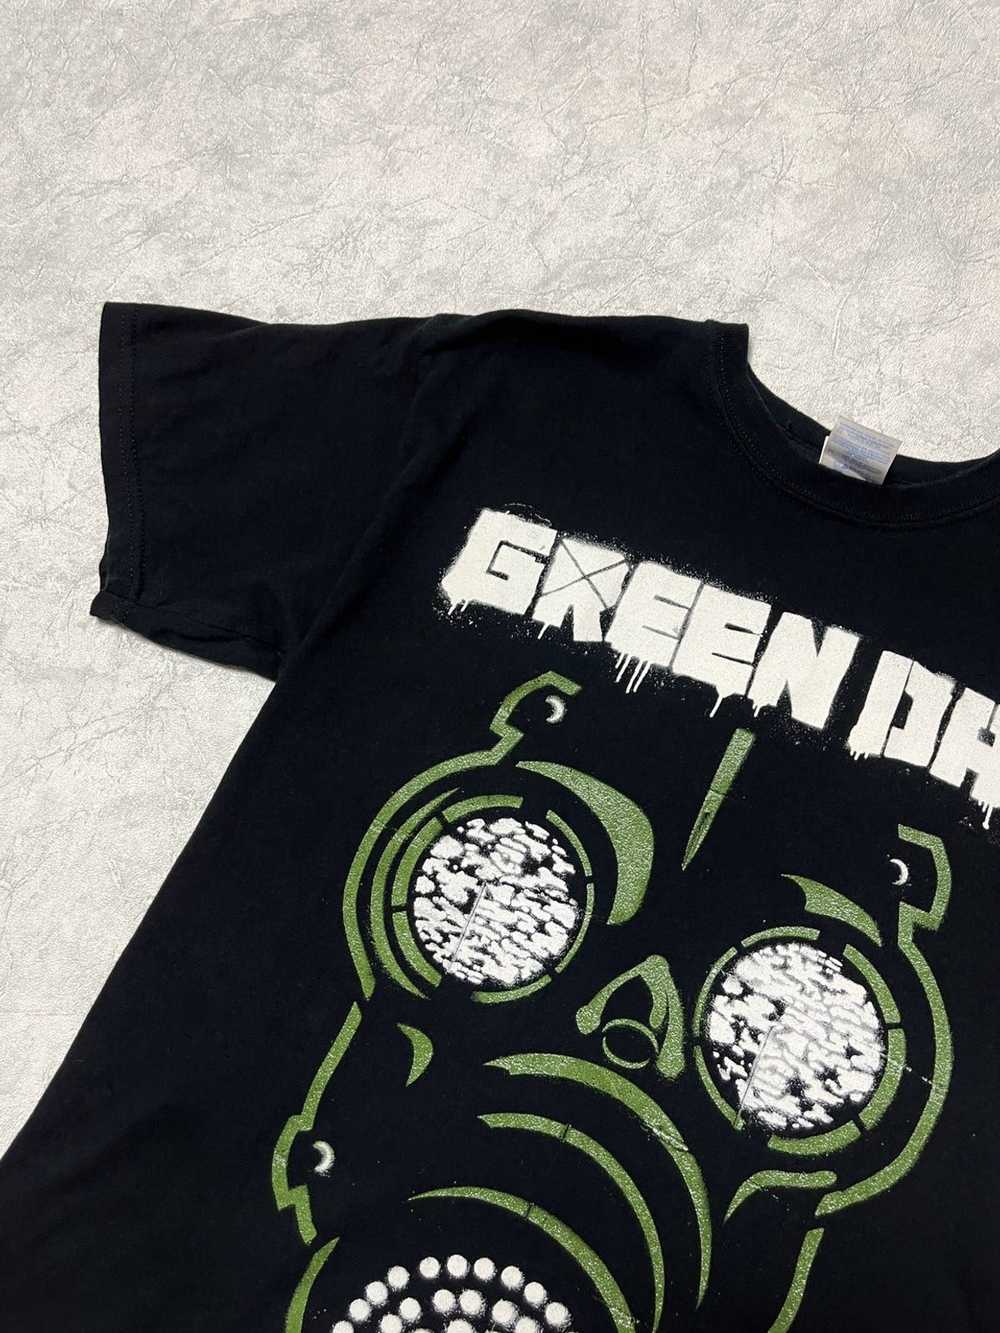 Band Tees × Vintage 2010 Green Day Band T-shirt - image 2